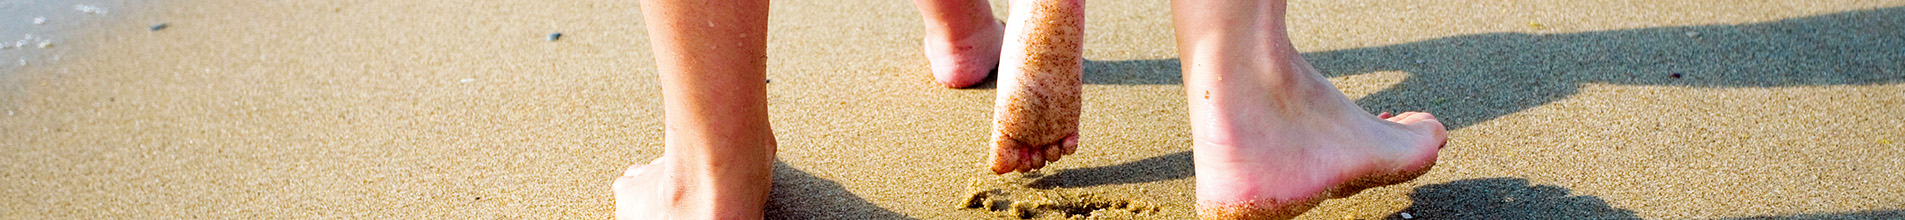 Feet leaving behind footprints in the sand